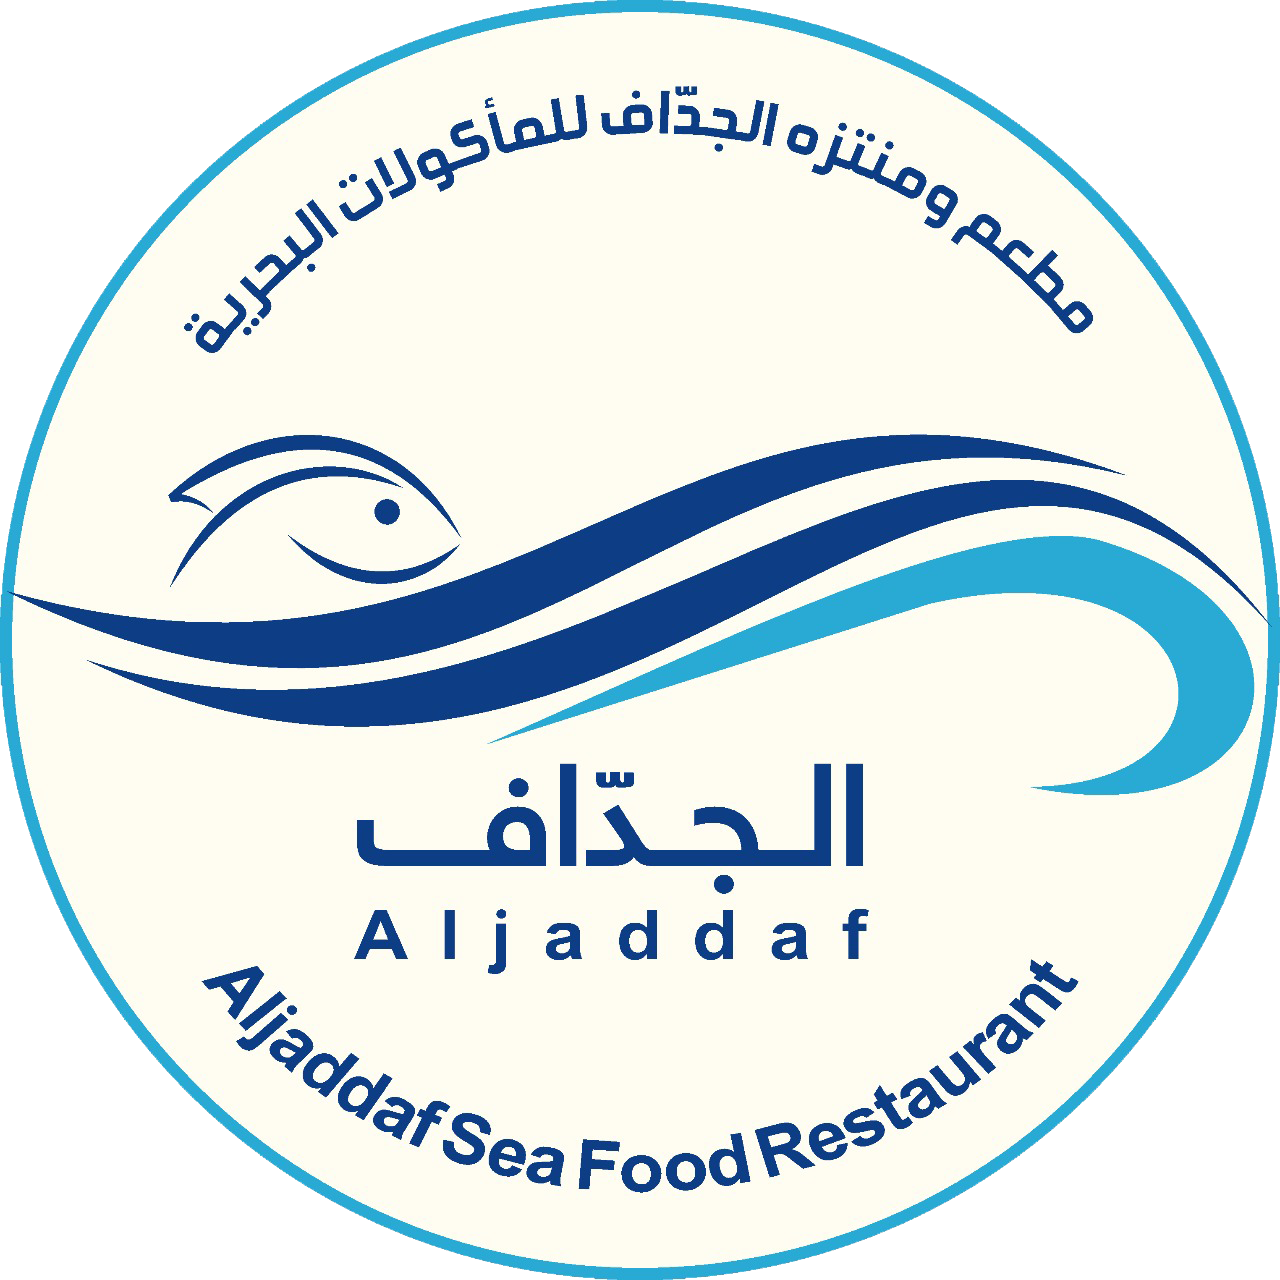 Al Jadaaf Seafood Restaurant